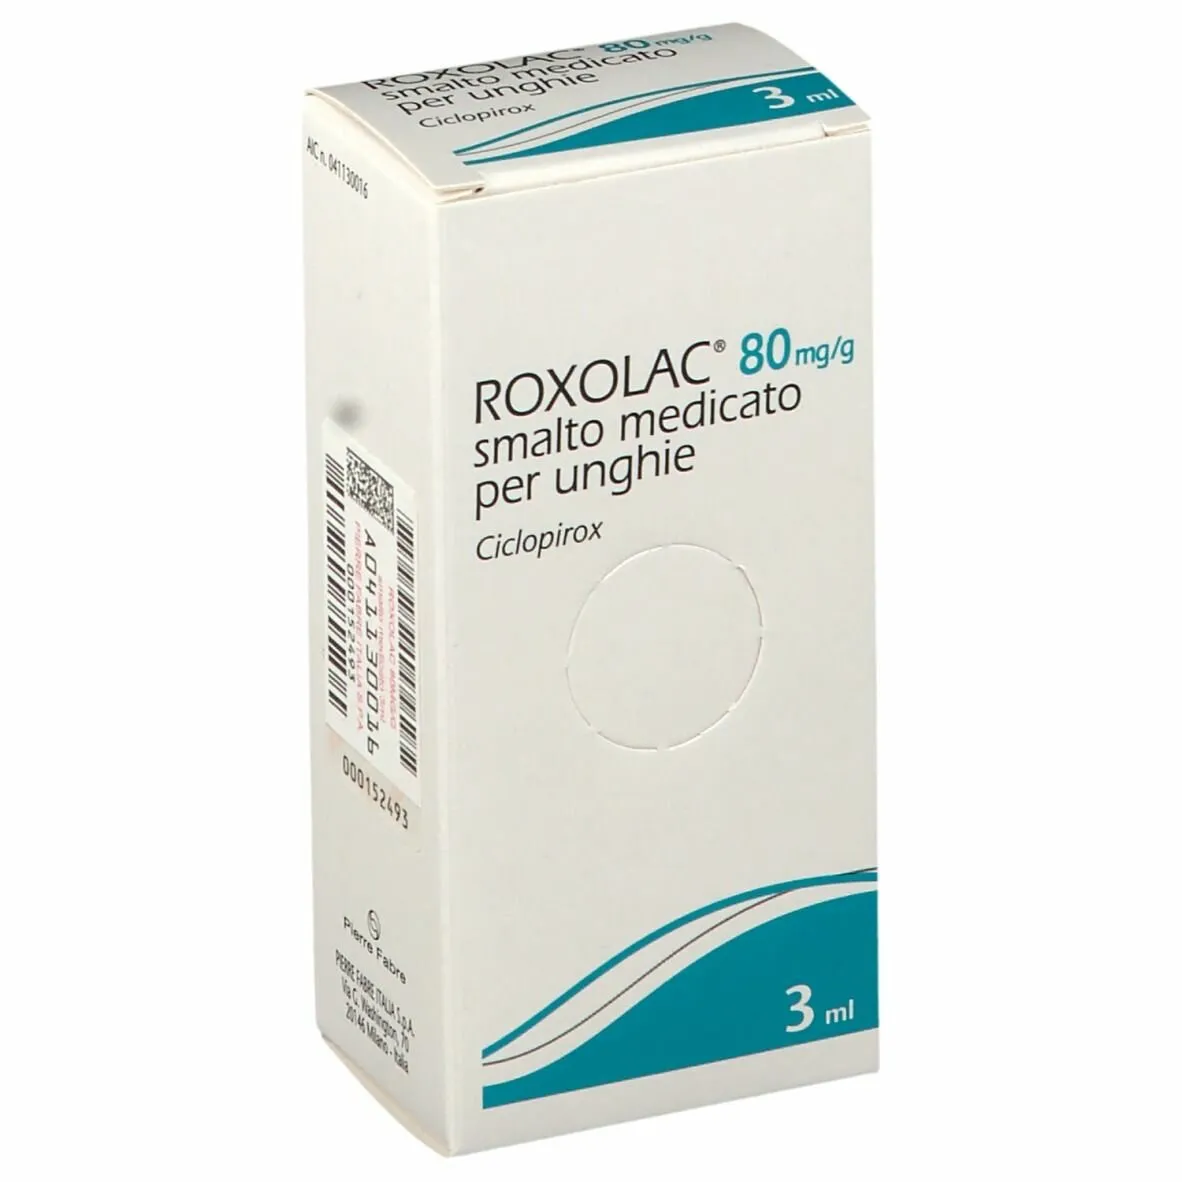 Roxolac 80mg/g Smalto Medicato per Unghie 3 ml